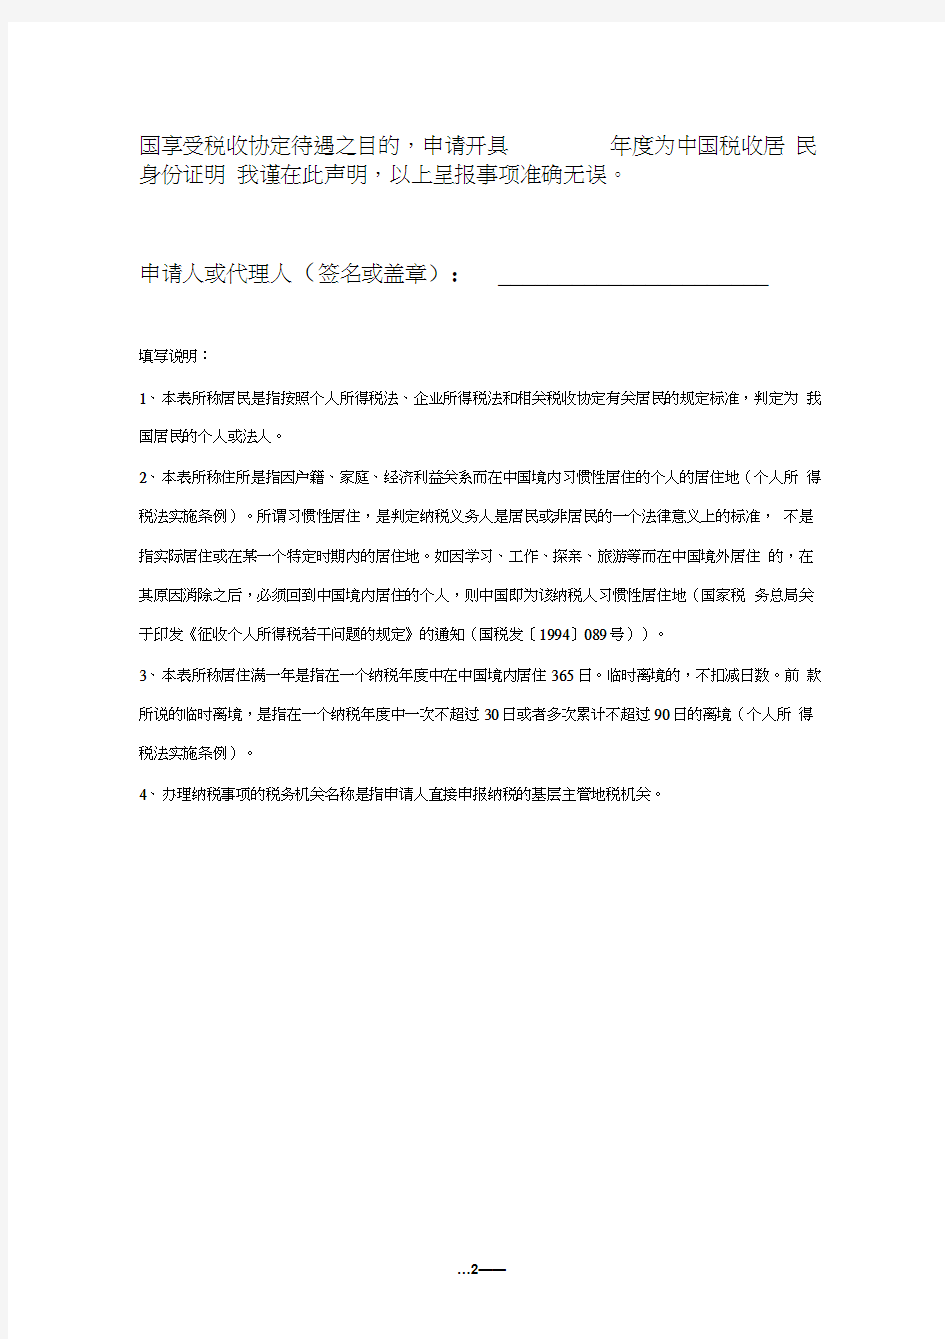 《中国税收居民身份证明》申请表